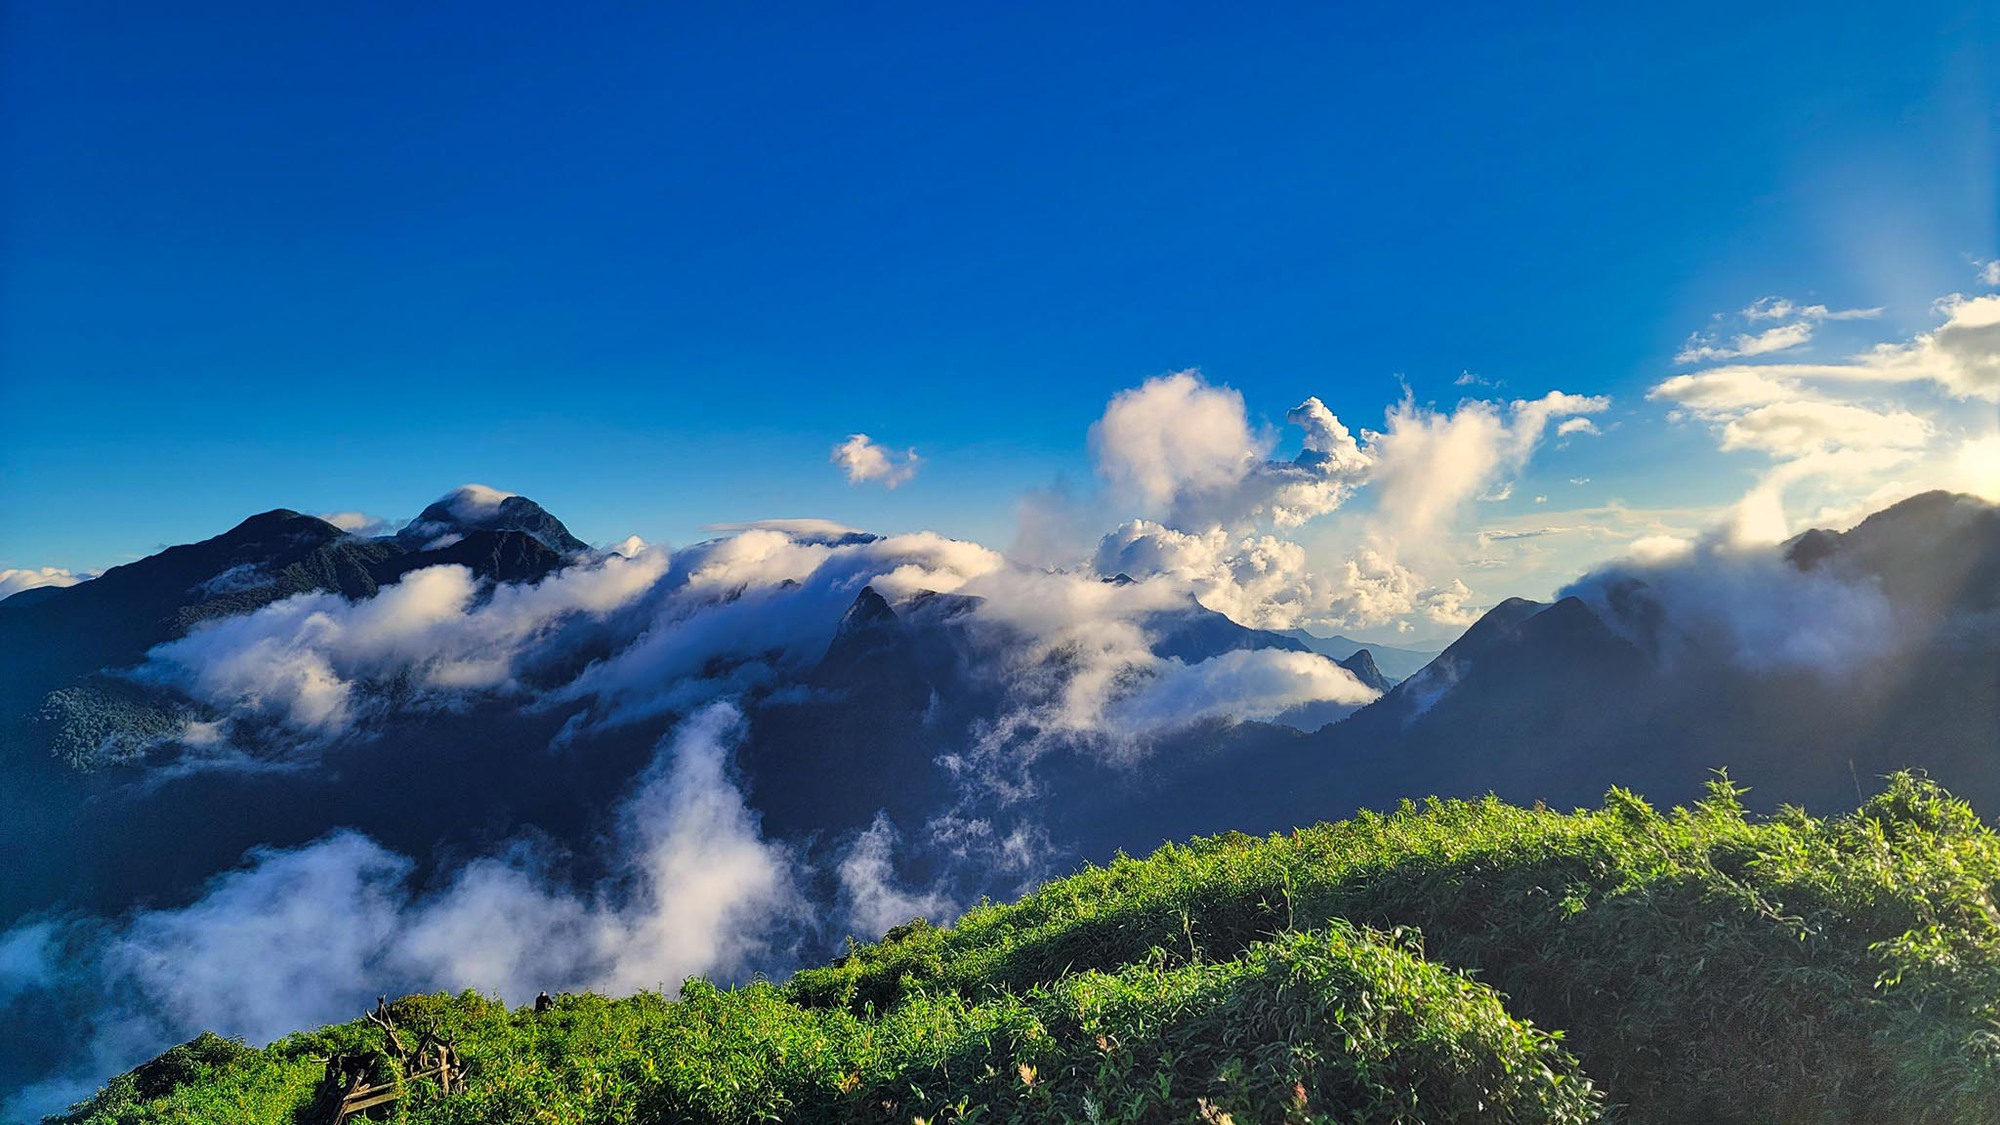 Băng rừng 2 ngày ngắm ‘quỷ núi’, săn hốc đá hình ‘trái tim’ Nhìu Cồ San-một ngọn núi cao ở Lào Cai - Ảnh 9.